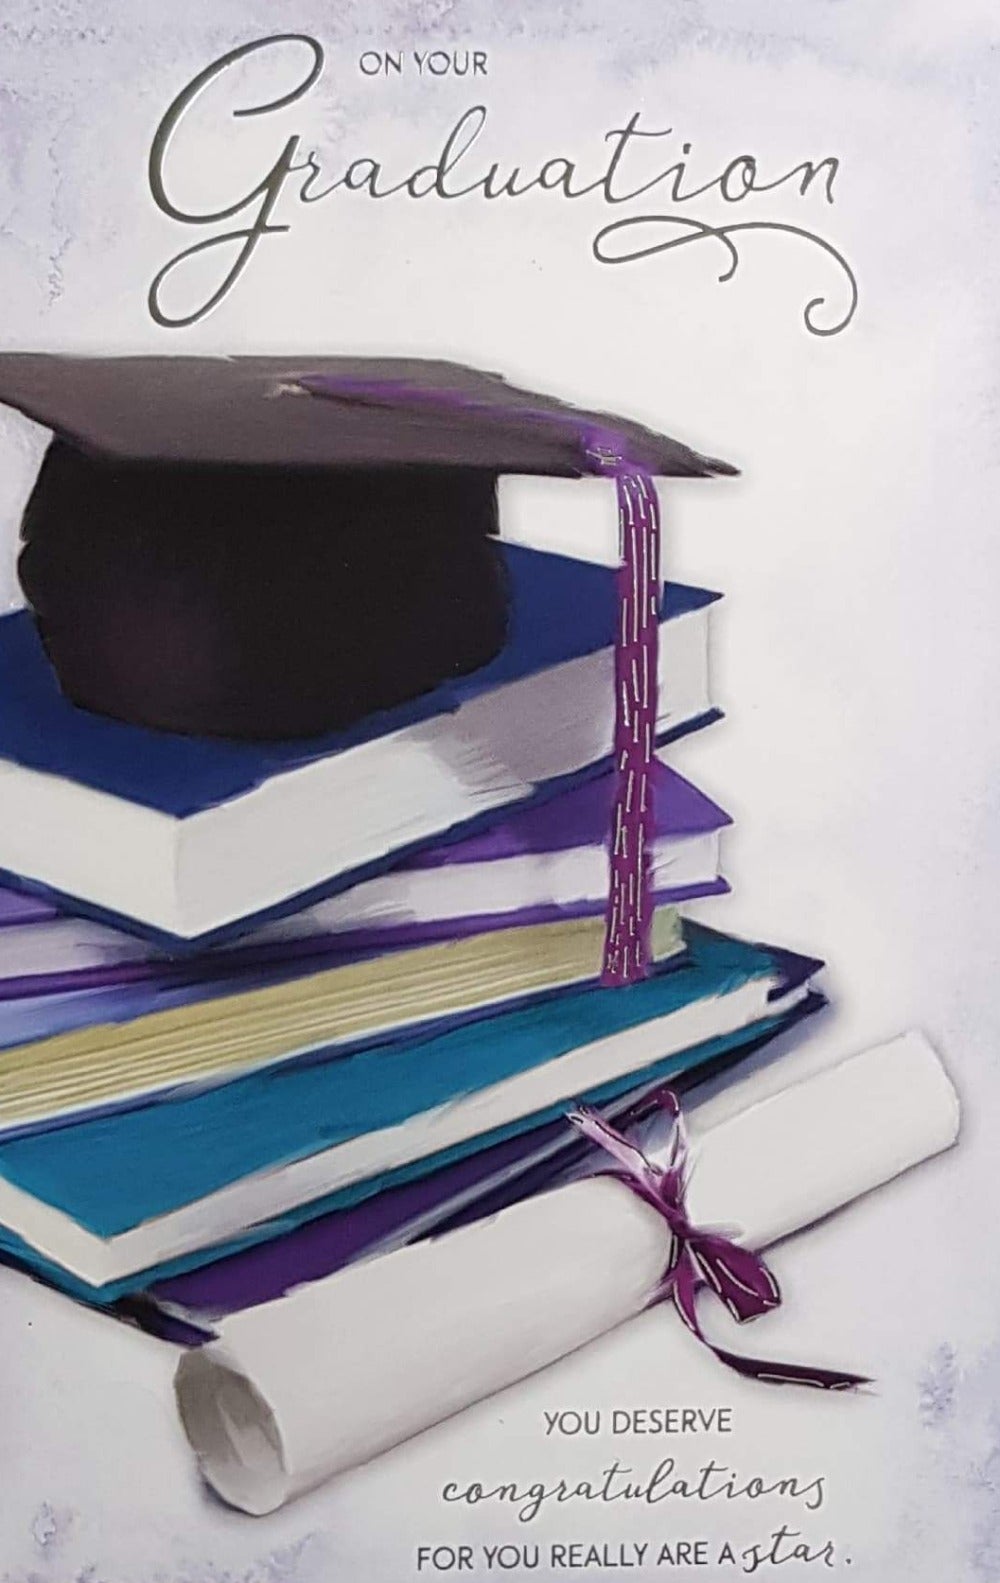 Congratulations Card - Graduation / Books & Certificate